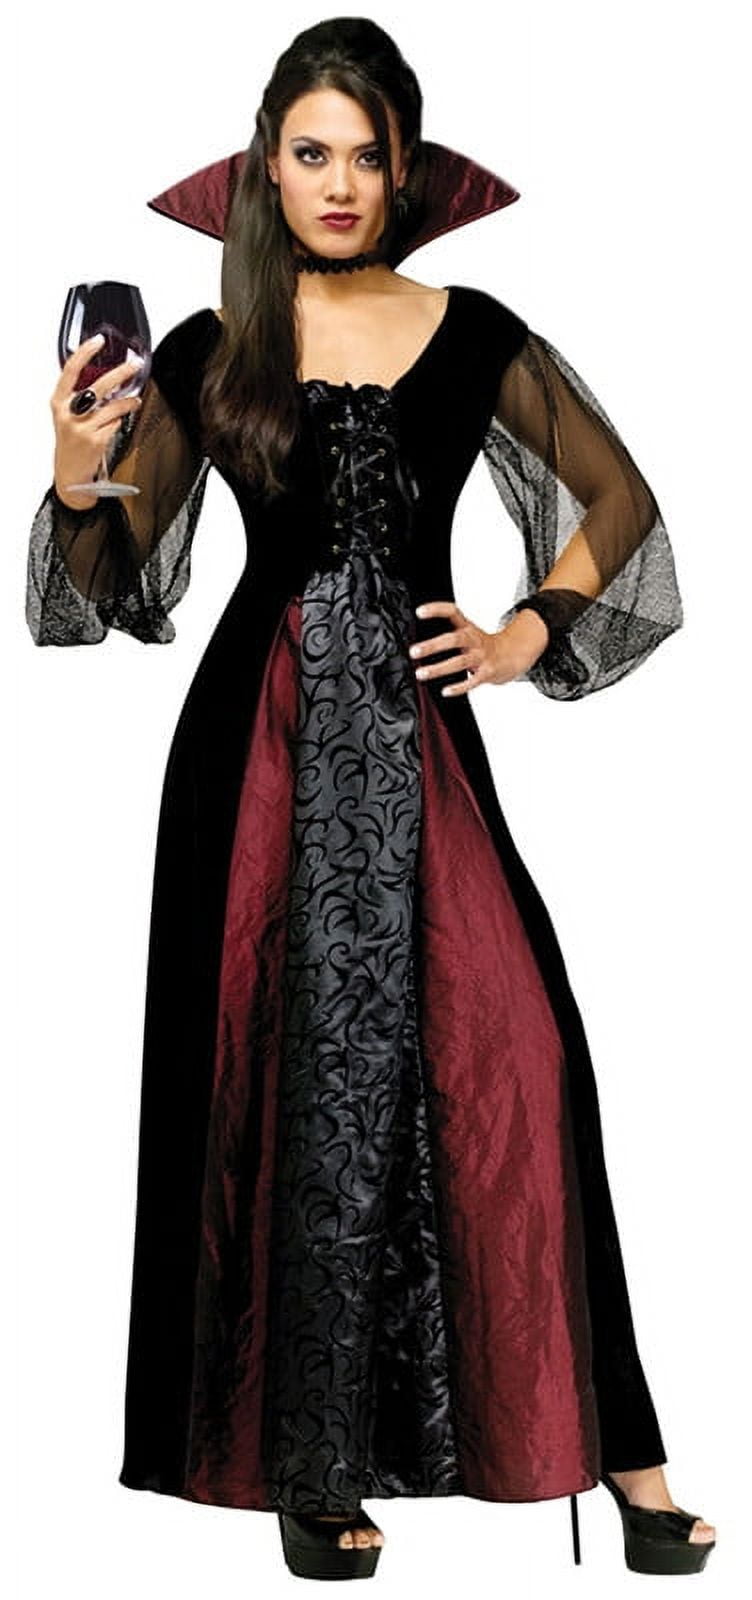 Women's Vampire Costume - Walmart.com